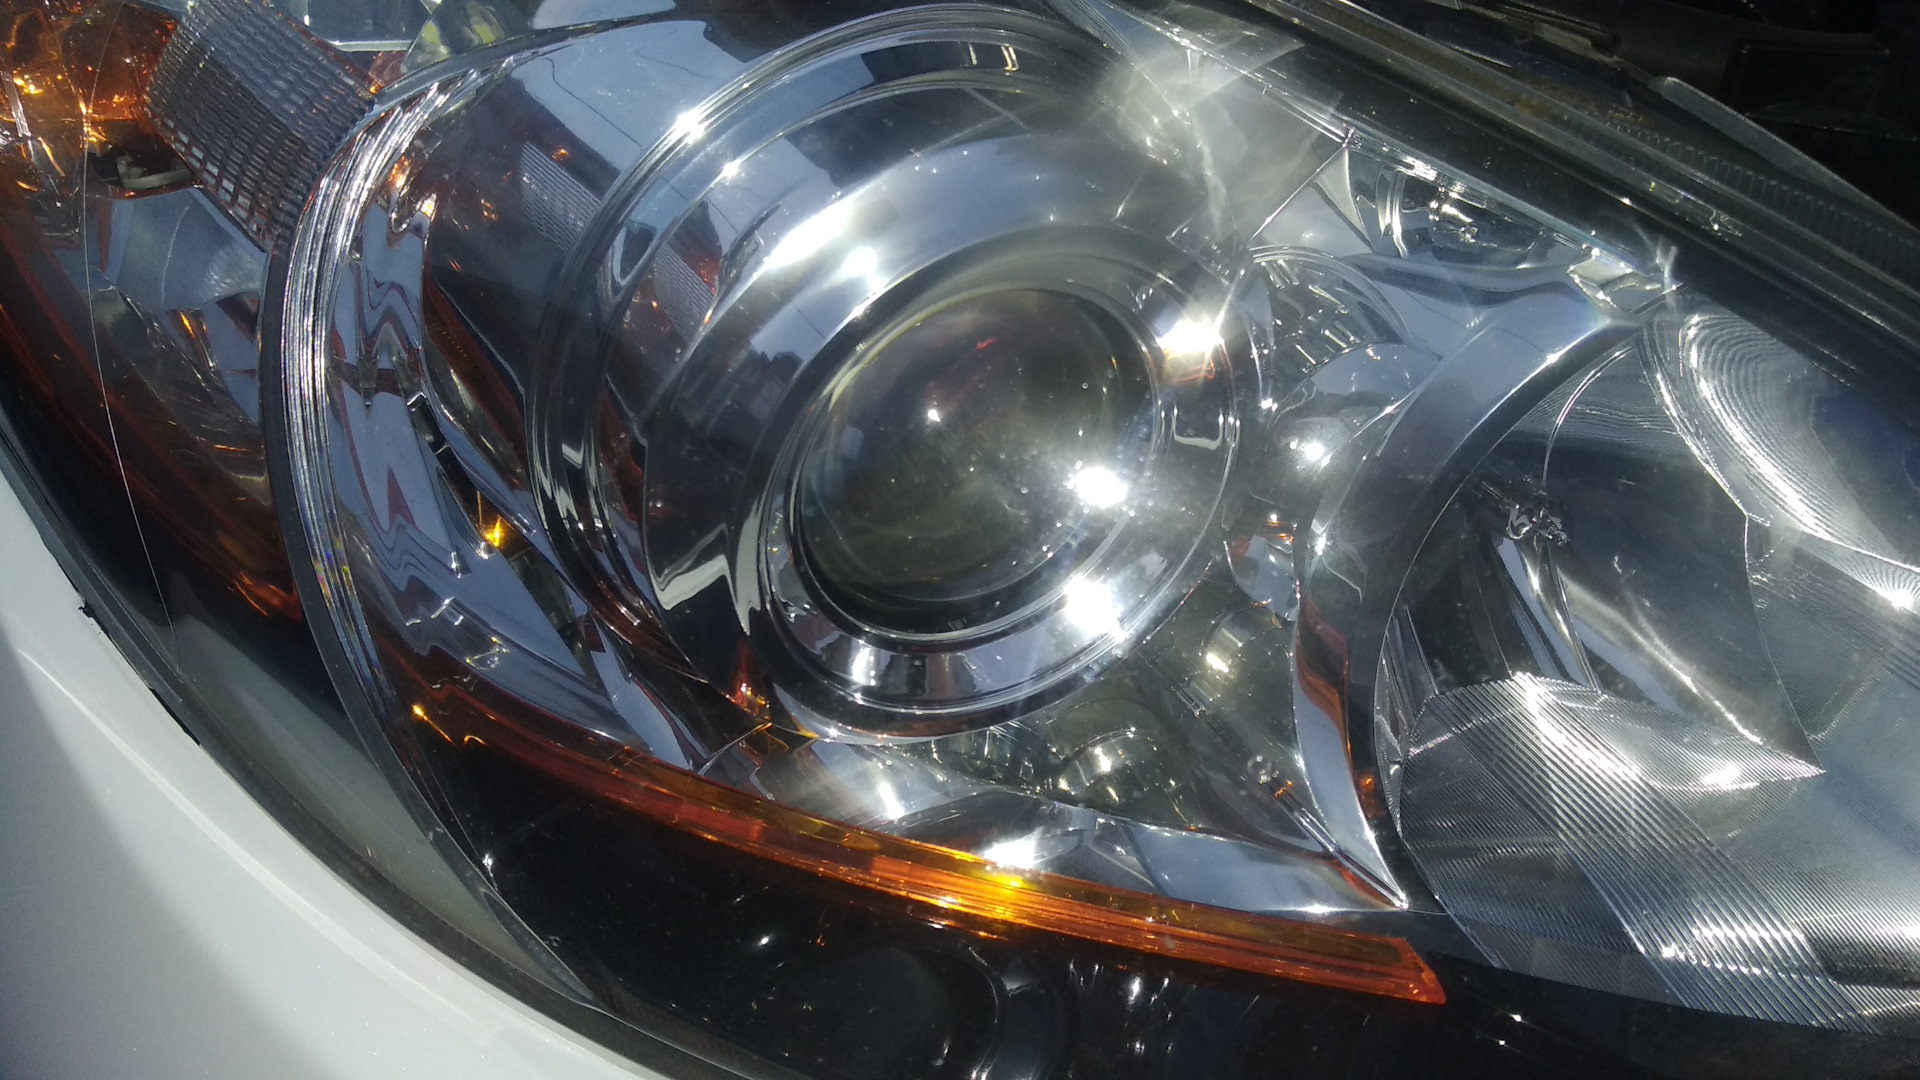 Фары ксенон Mazda 3 BL. Мазда 3 2012 галоген. Ксеноновые лампы на Мазда СХ 5. Headlight Tuning Mazda 3. Видео фаре 3